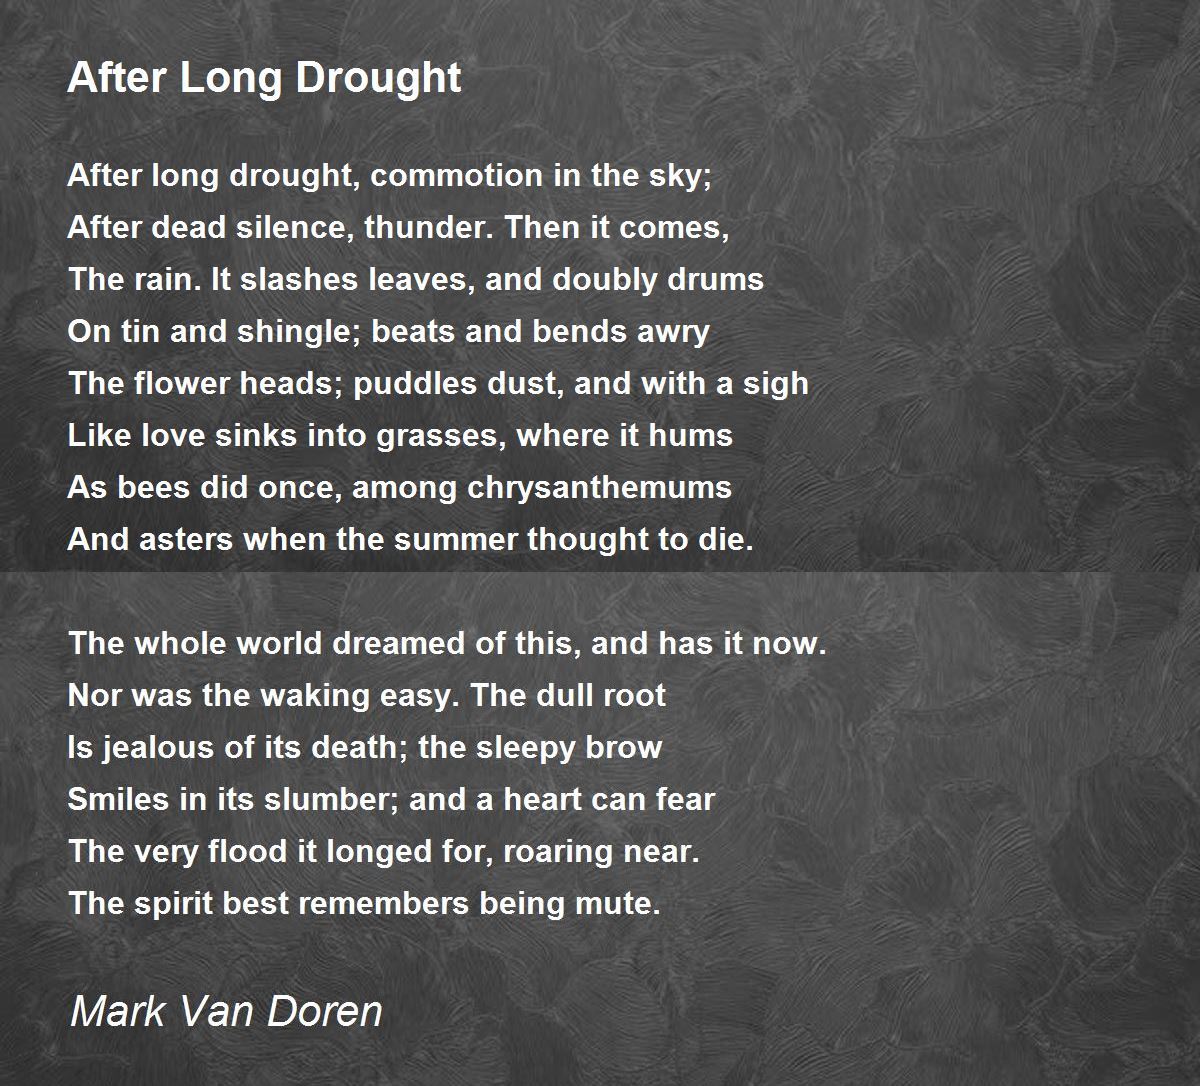 After Long Drought Poem by Mark Van Doren - Poem Hunter